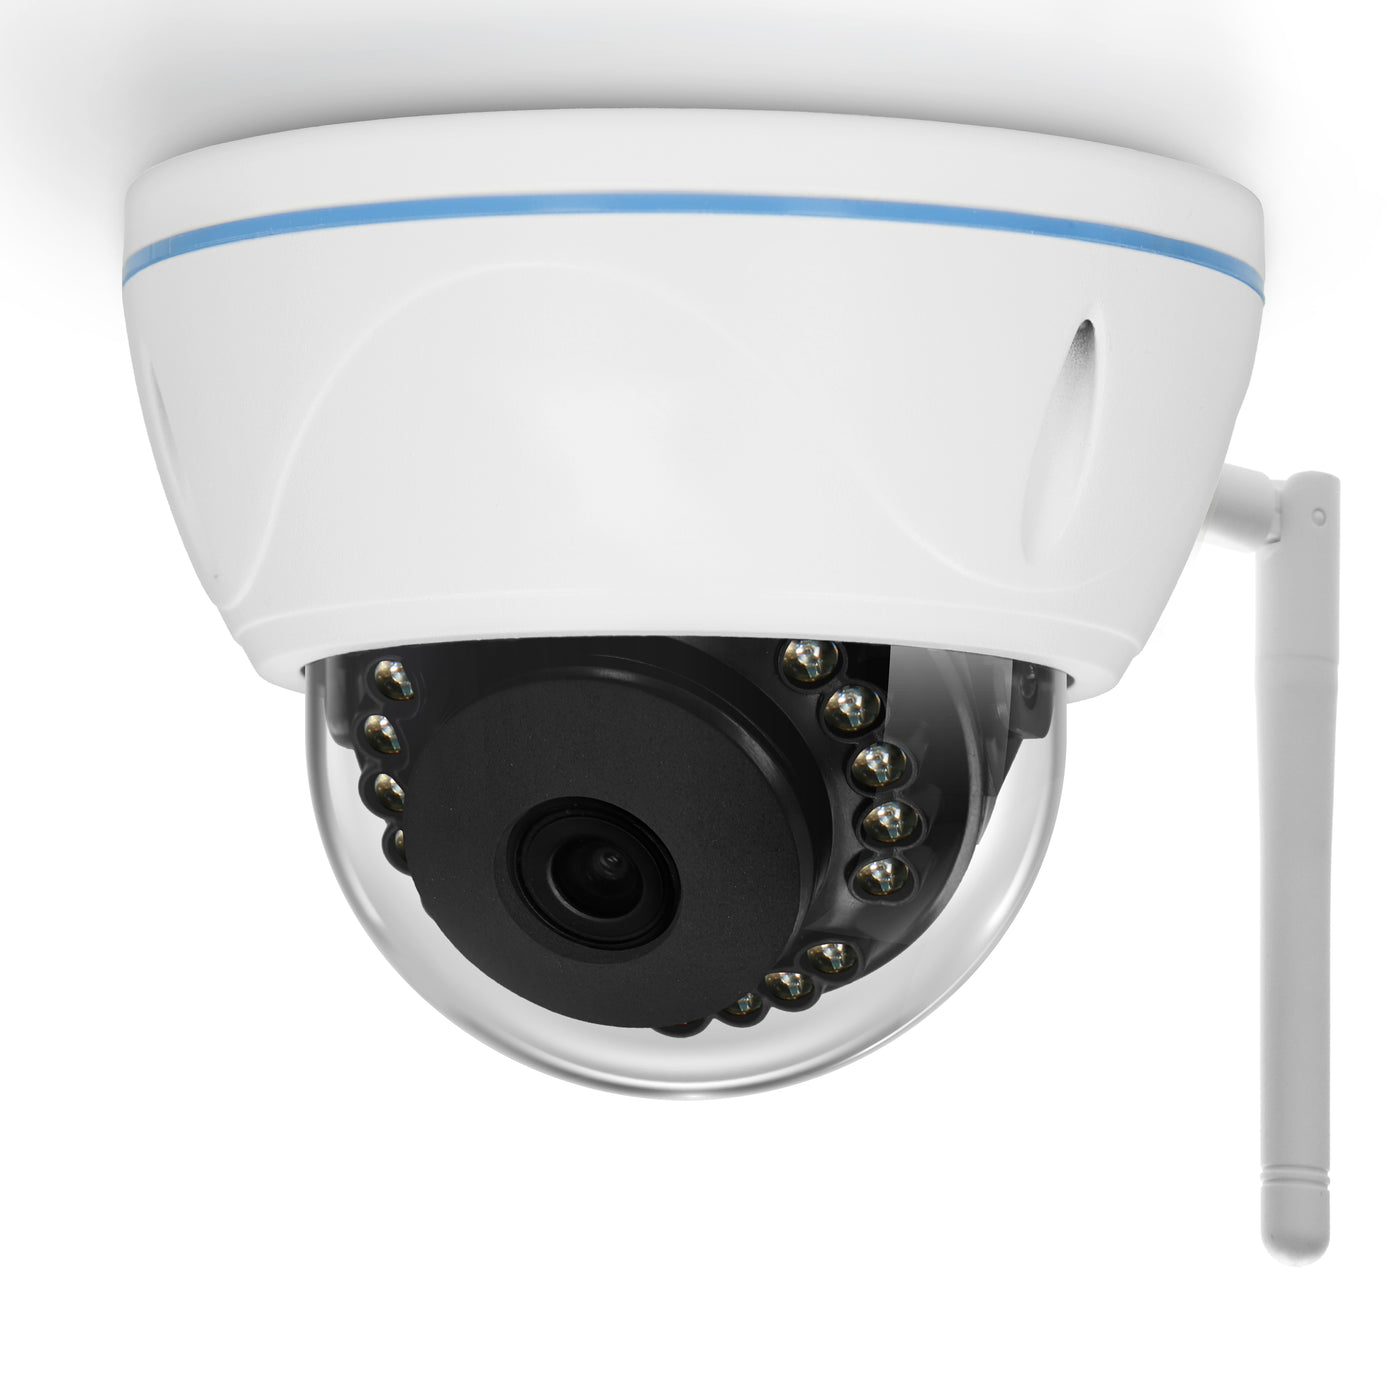 Alecto DVC136IP - Outdoor Wi-Fi dome camera - White